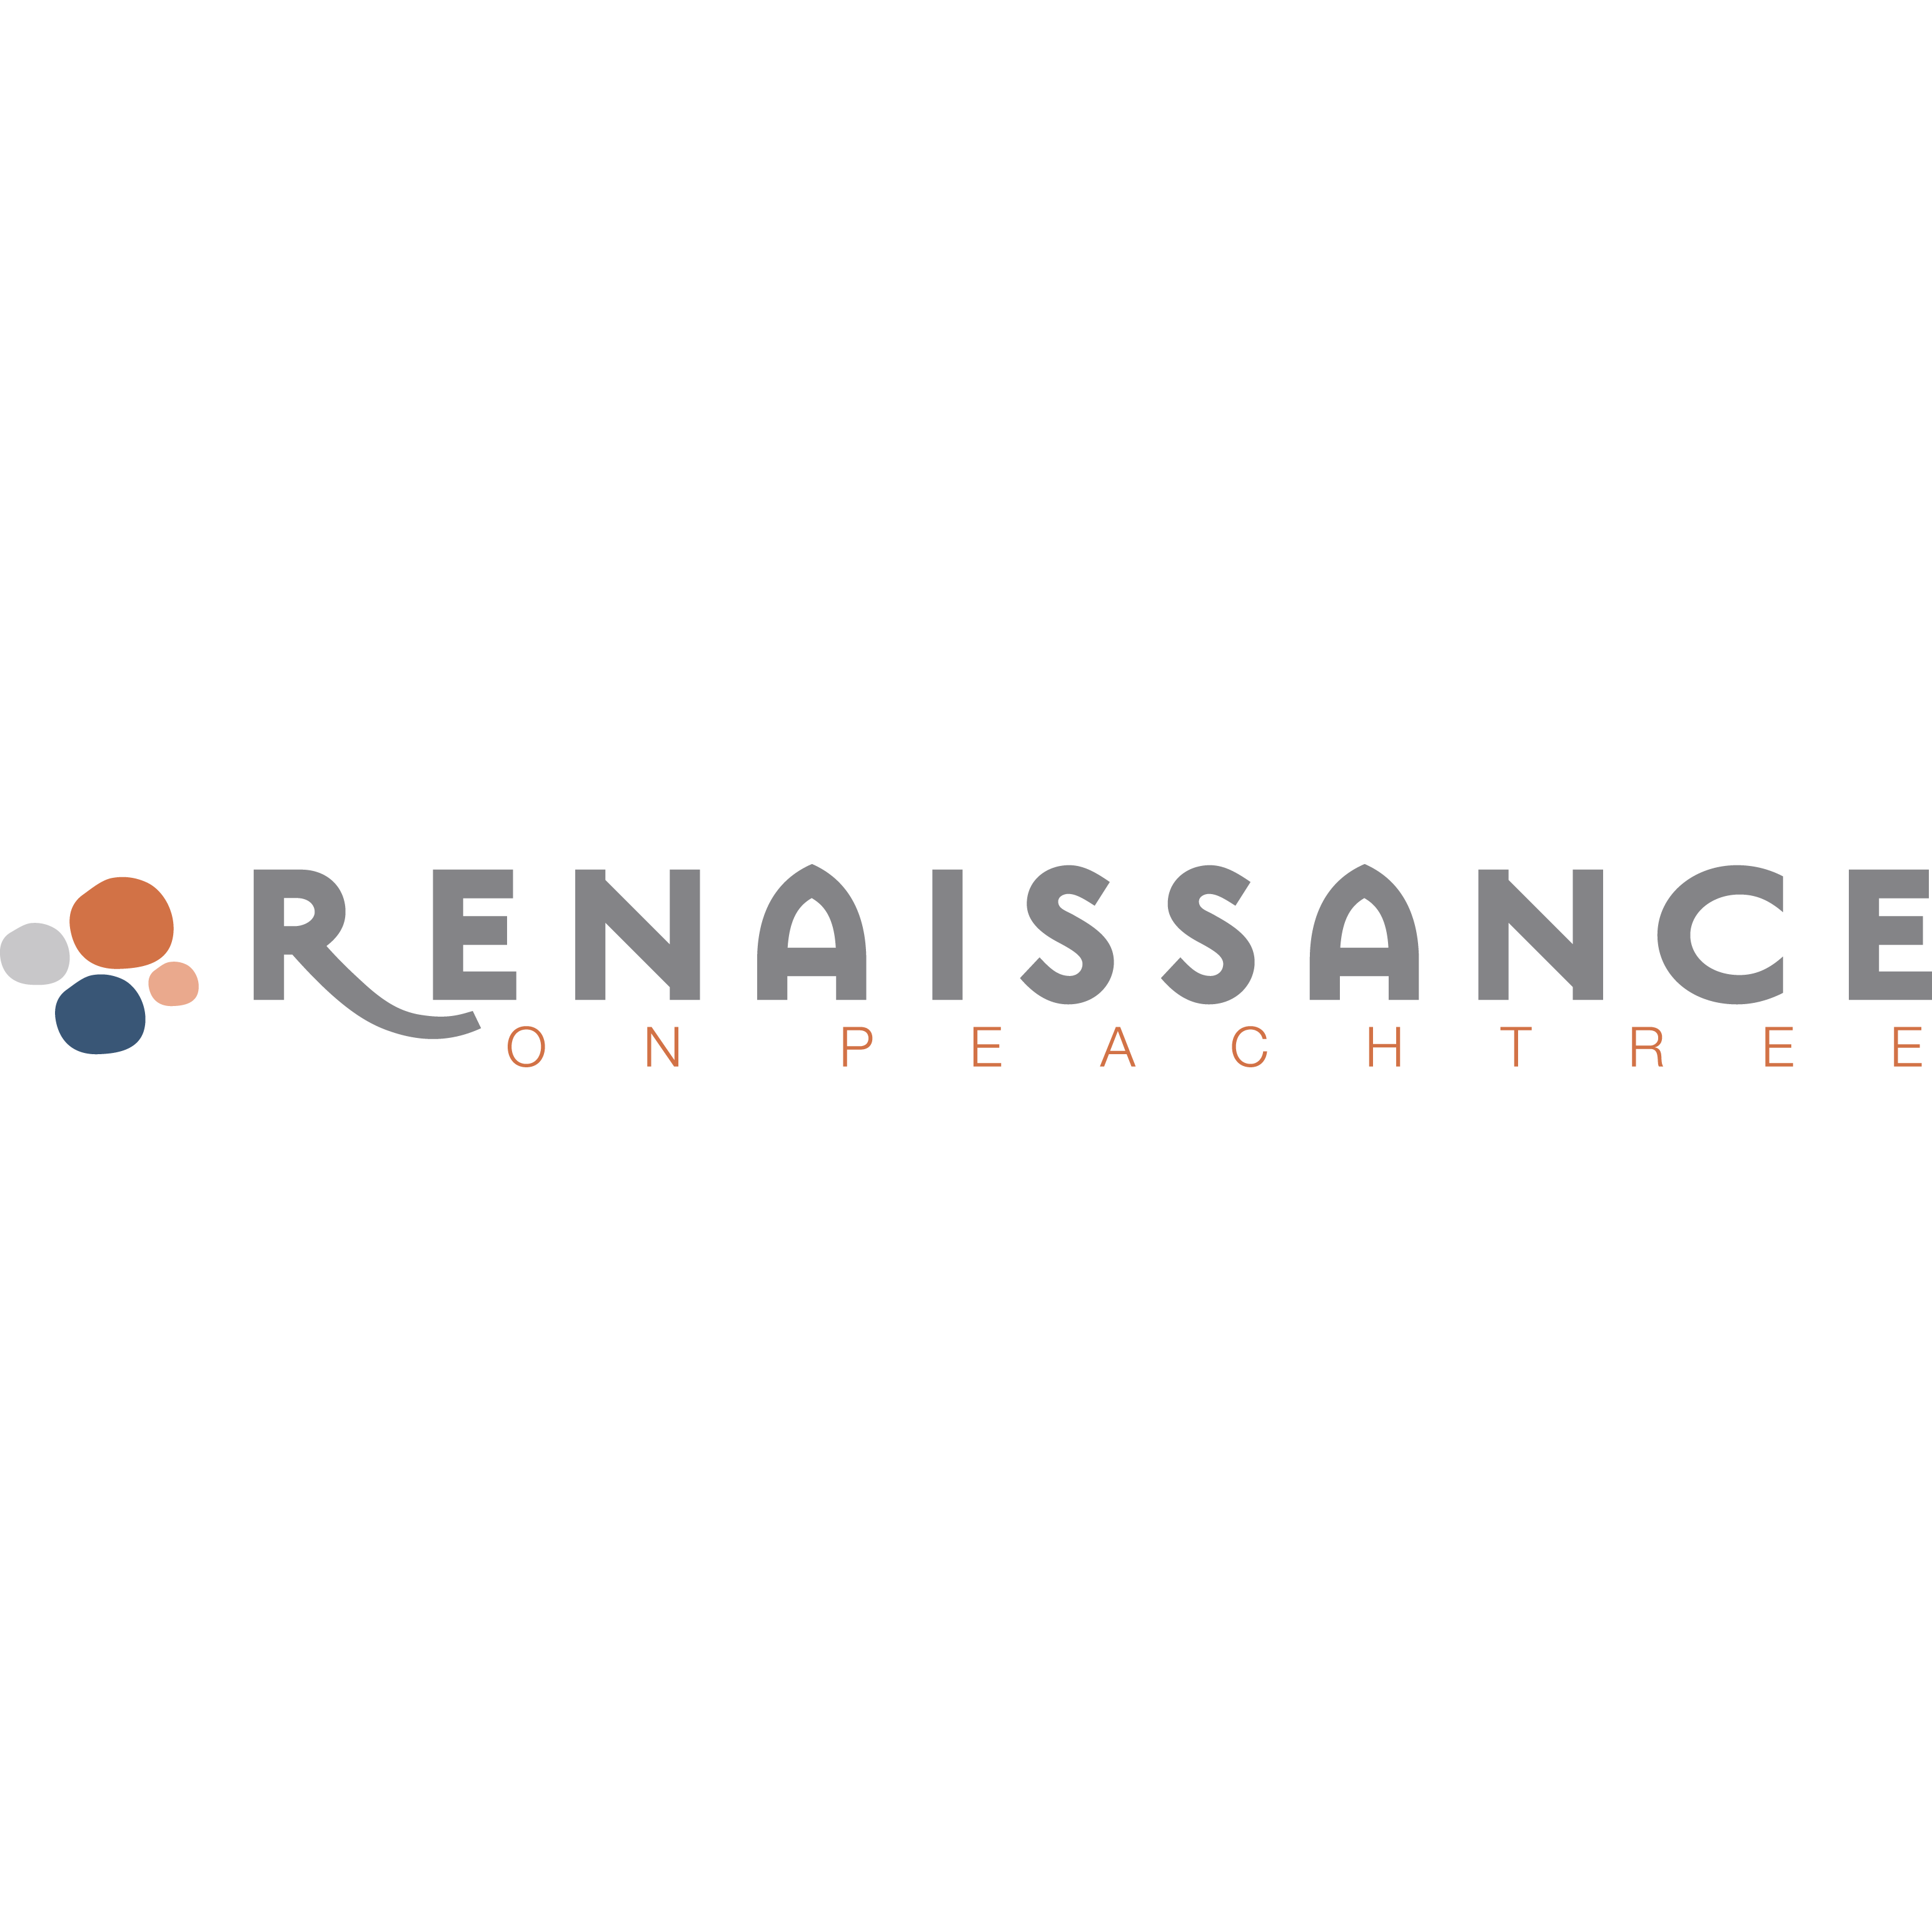 Renaissance on Peachtree Logo